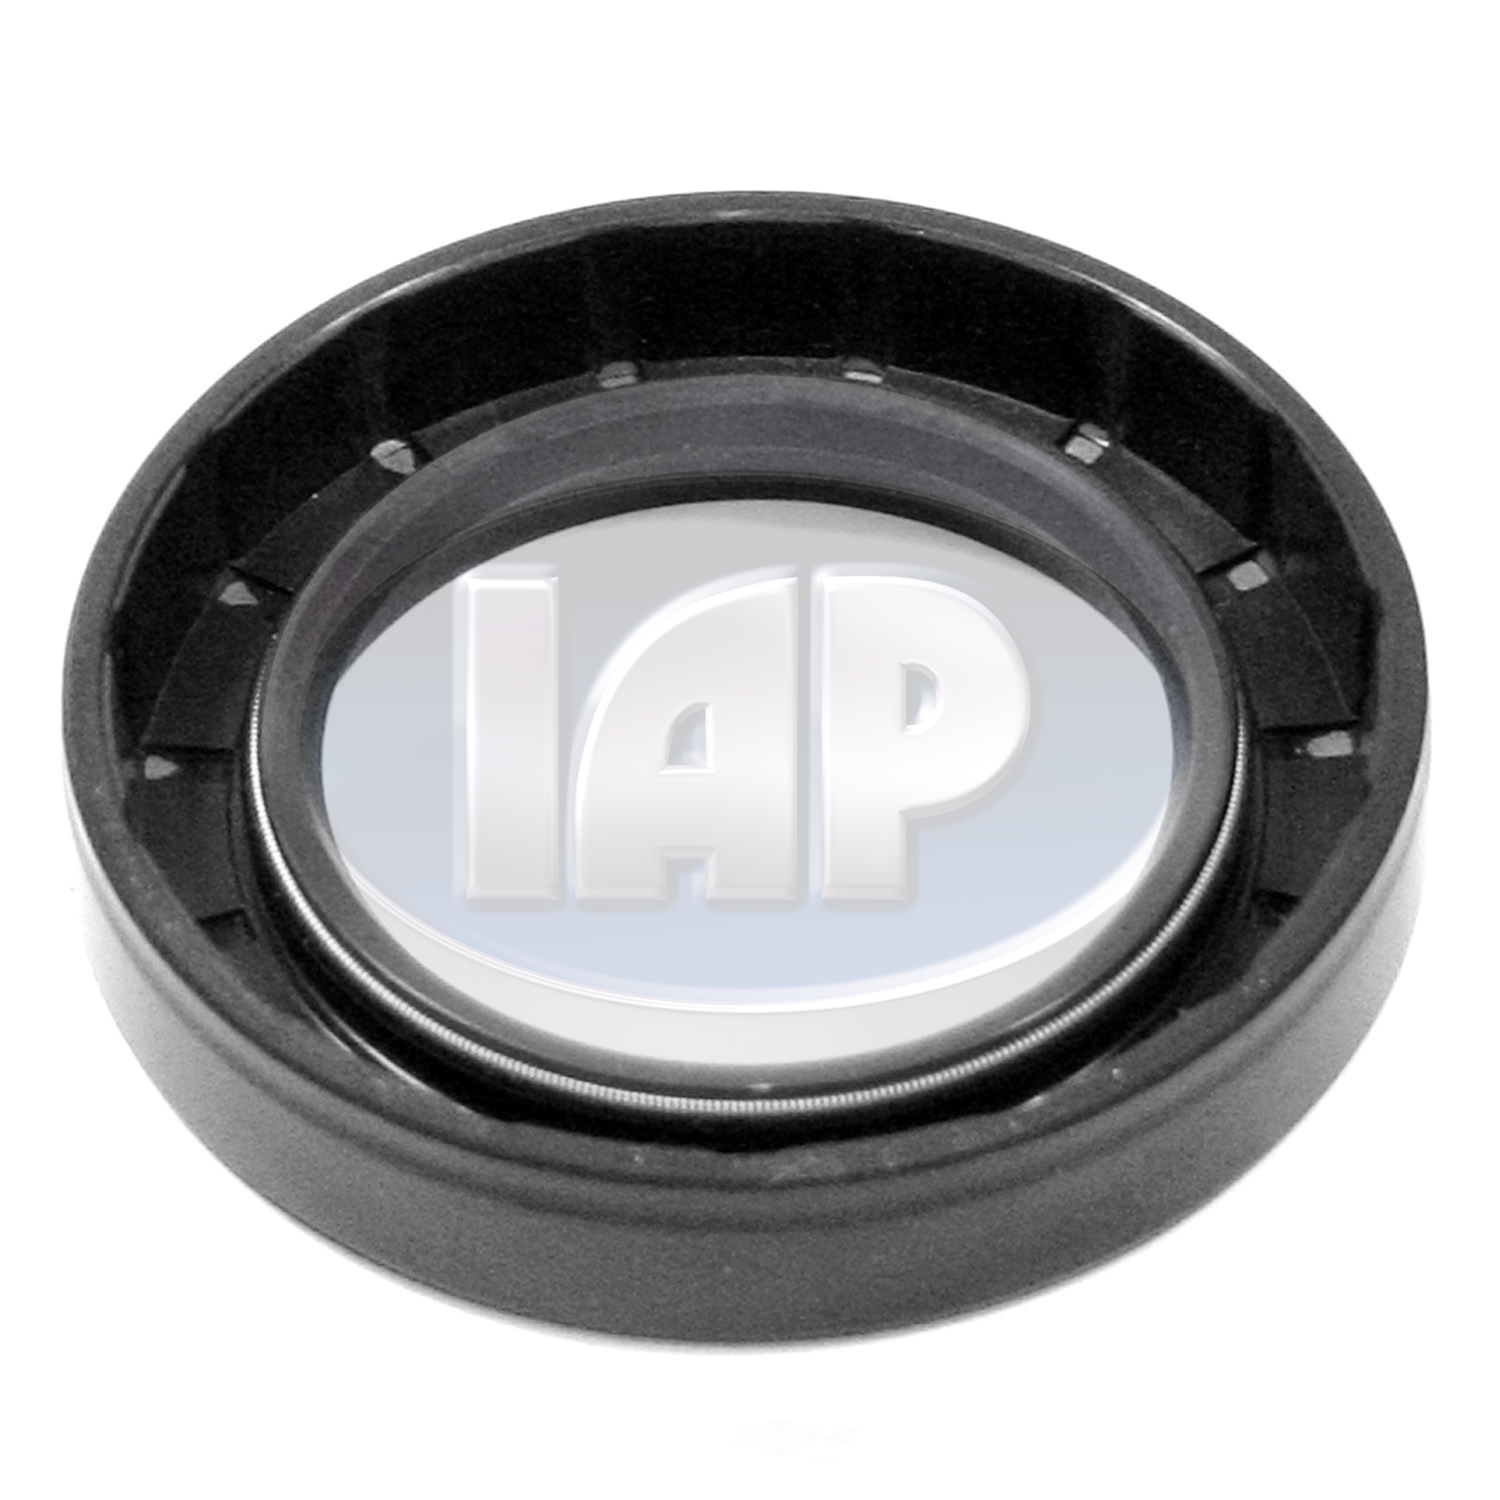 IAP/KUHLTEK MOTORWERKS - Wheel Seal - KMS 111405641A